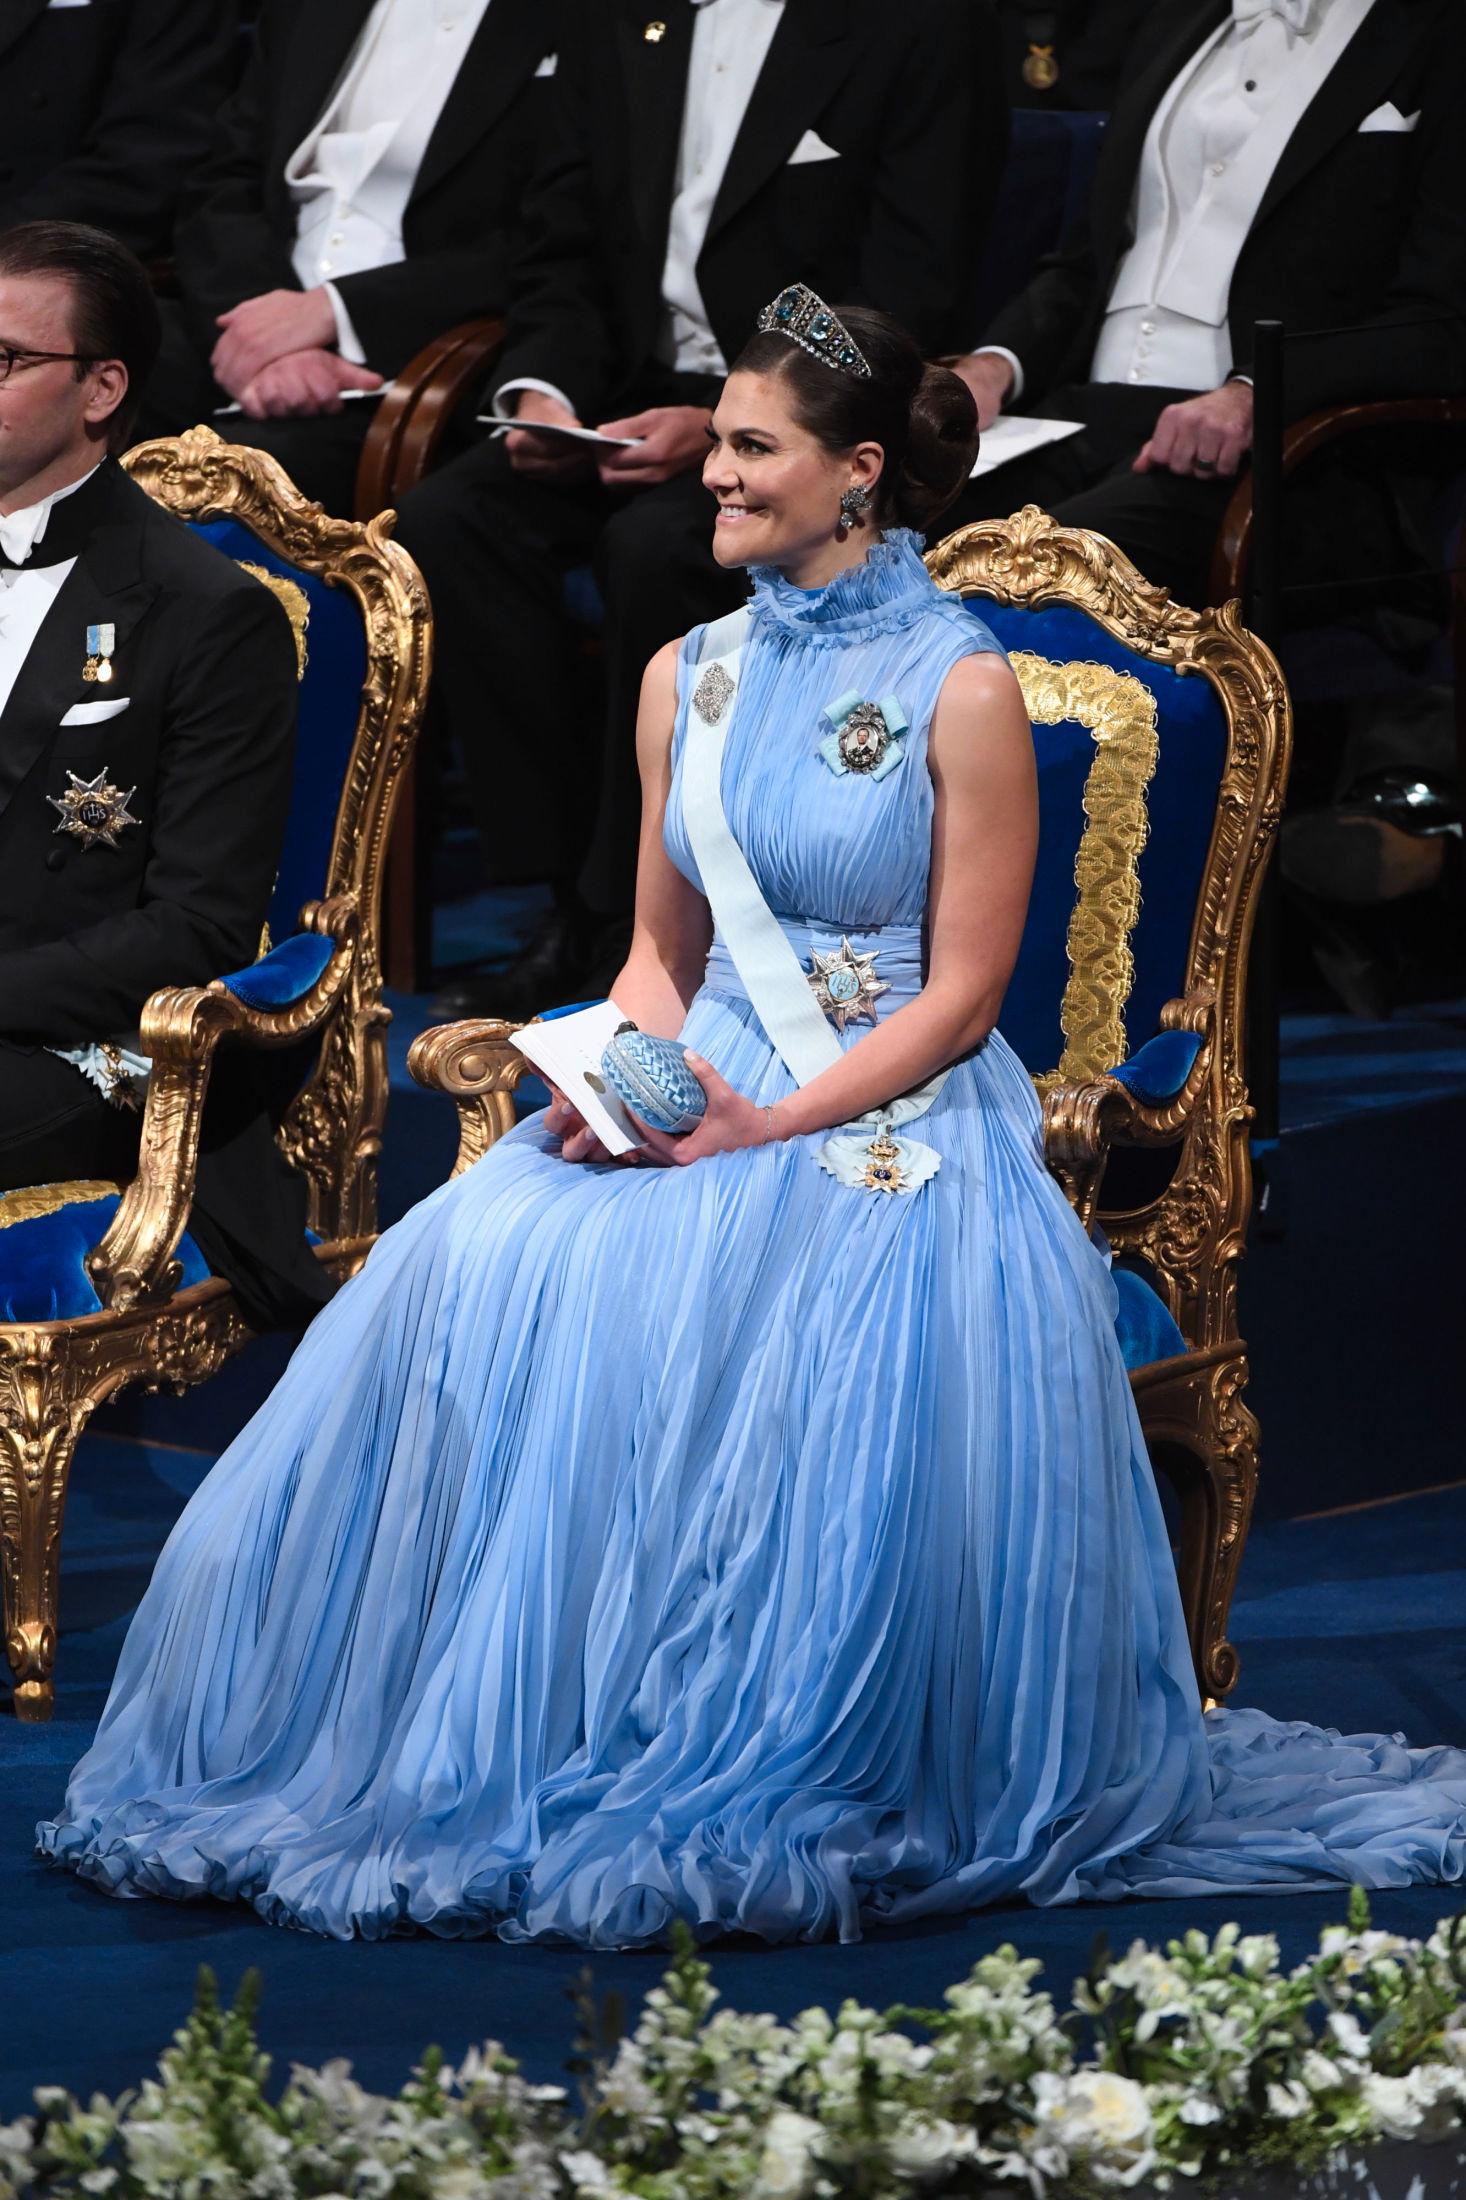 KJOLEDRØM: Kronprinsesse Victoria var kledd i en himmelblå kjole med voluminøst plisséskjørt. Vesken er en rådyr kongelig favoritt fra Bottega Veneta. Foto: NTB scanpix